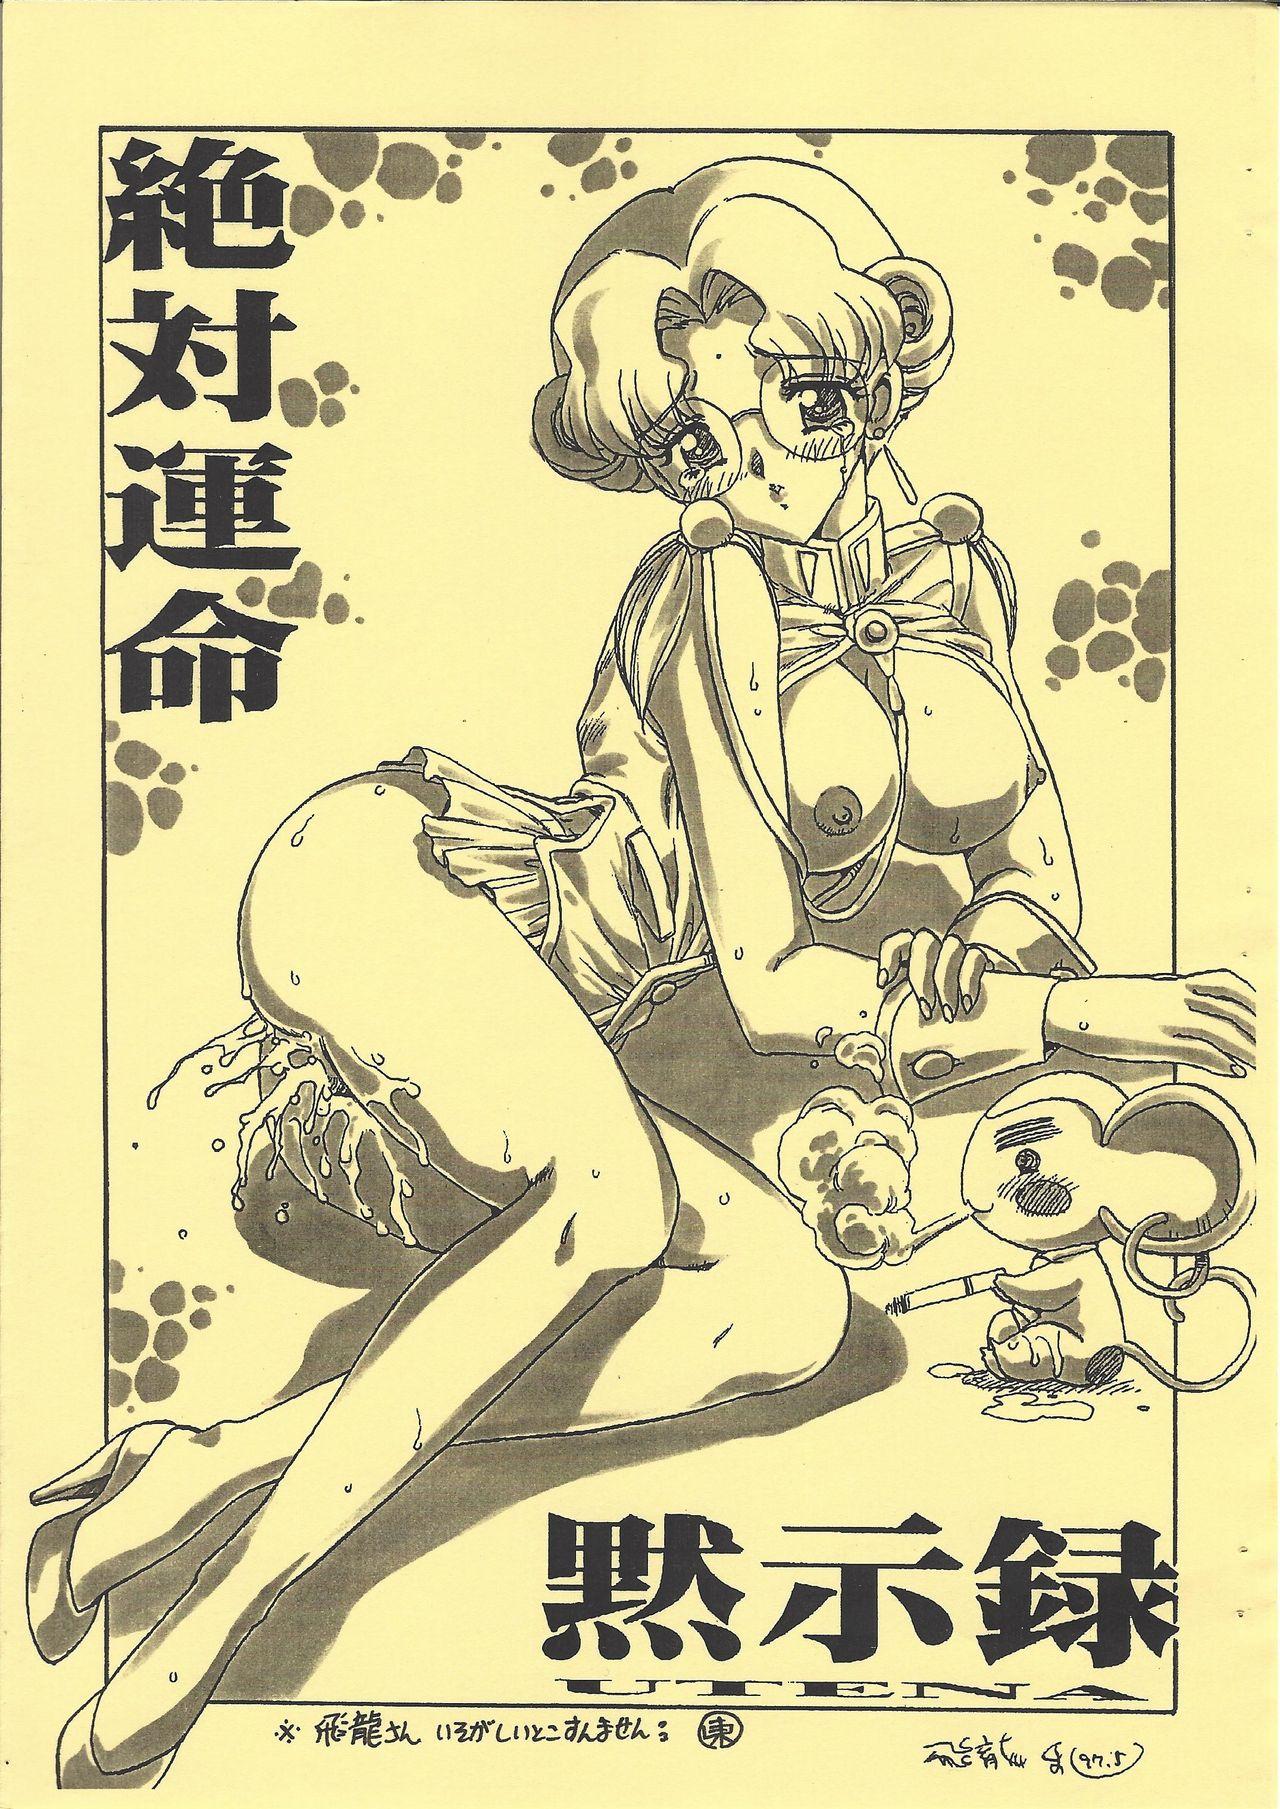 Women Sucking Dick Shinpi no Sekai Taisen - El hazard Sakura taisen | sakura wars Revolutionary girl utena | shoujo kakumei utena Retro - Page 3